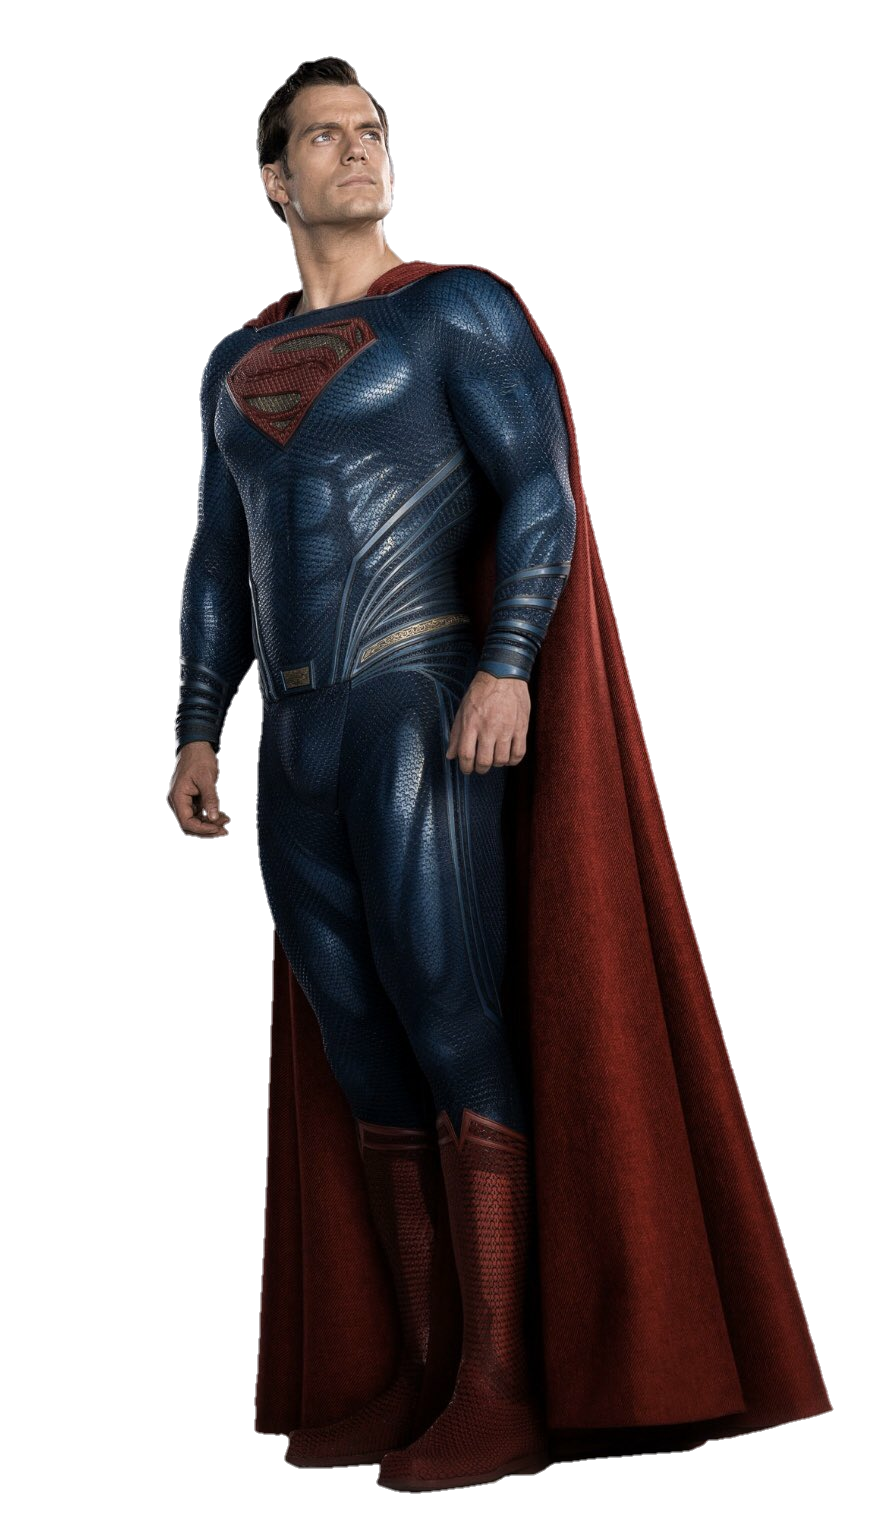 Imagen de Justice League Superman PNGn de alta calidad